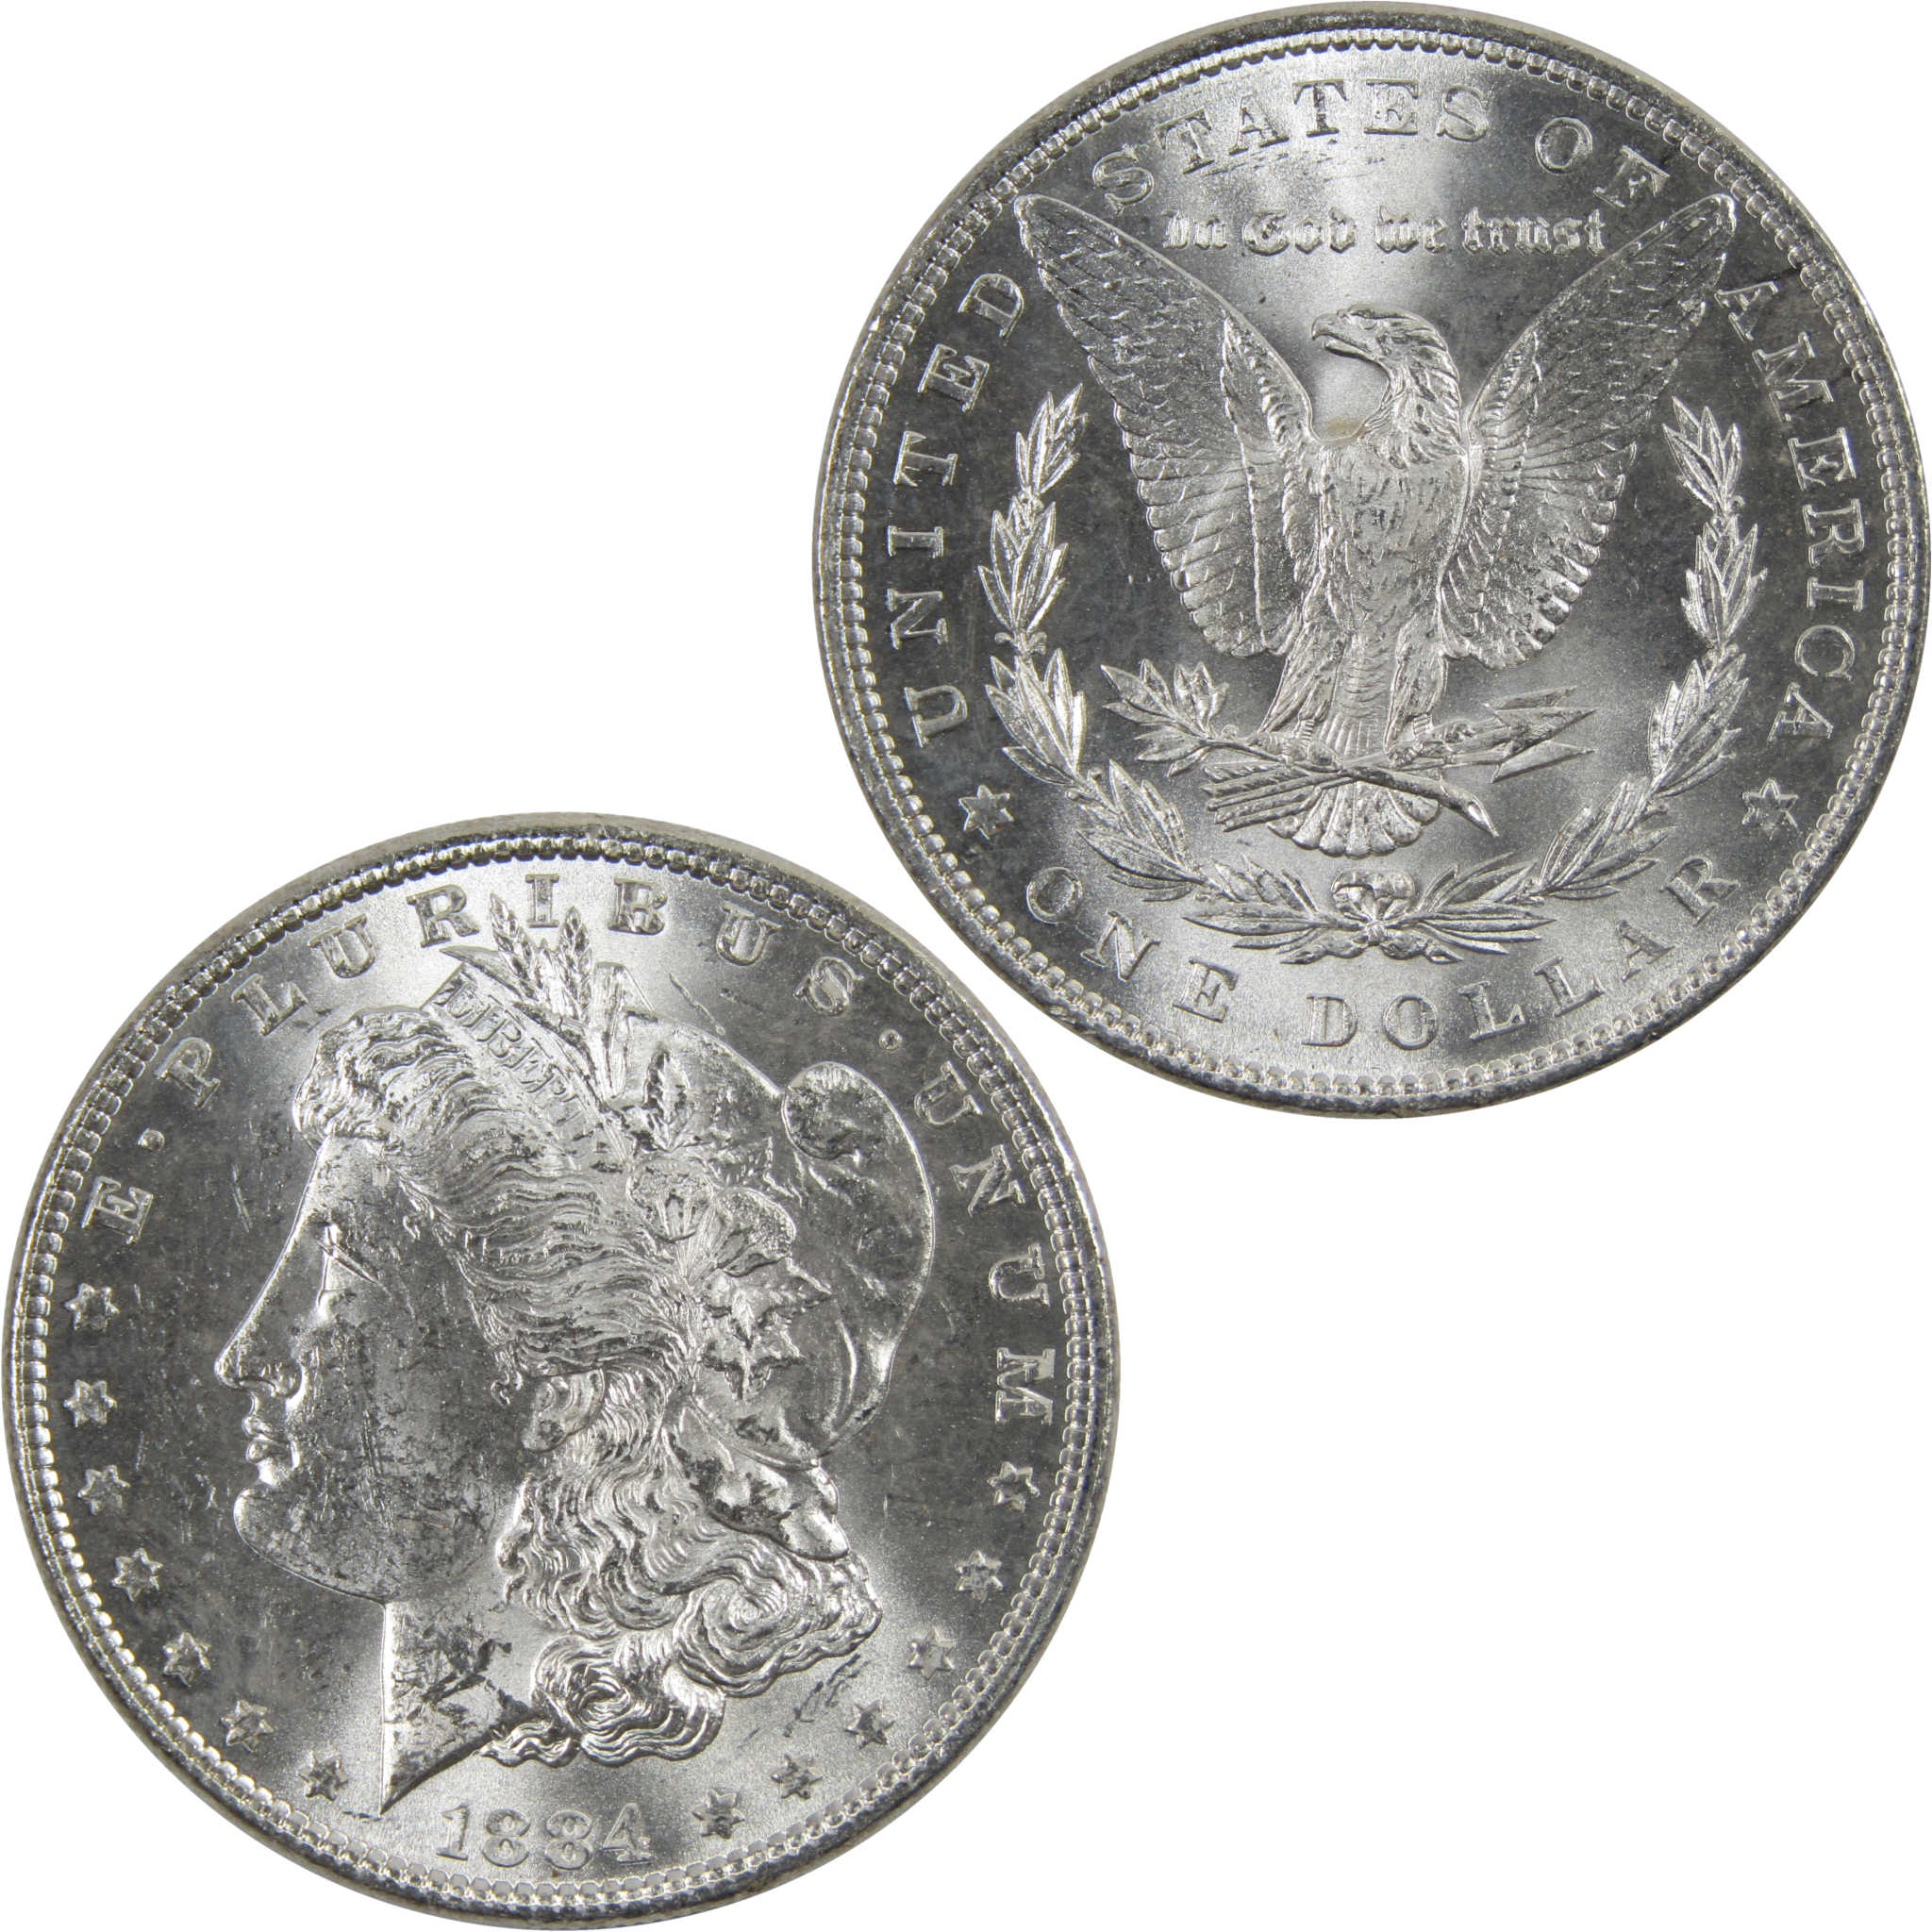 1884 Morgan Dollar BU Uncirculated 90% Silver $1 Coin SKU:I6008 - Morgan coin - Morgan silver dollar - Morgan silver dollar for sale - Profile Coins &amp; Collectibles